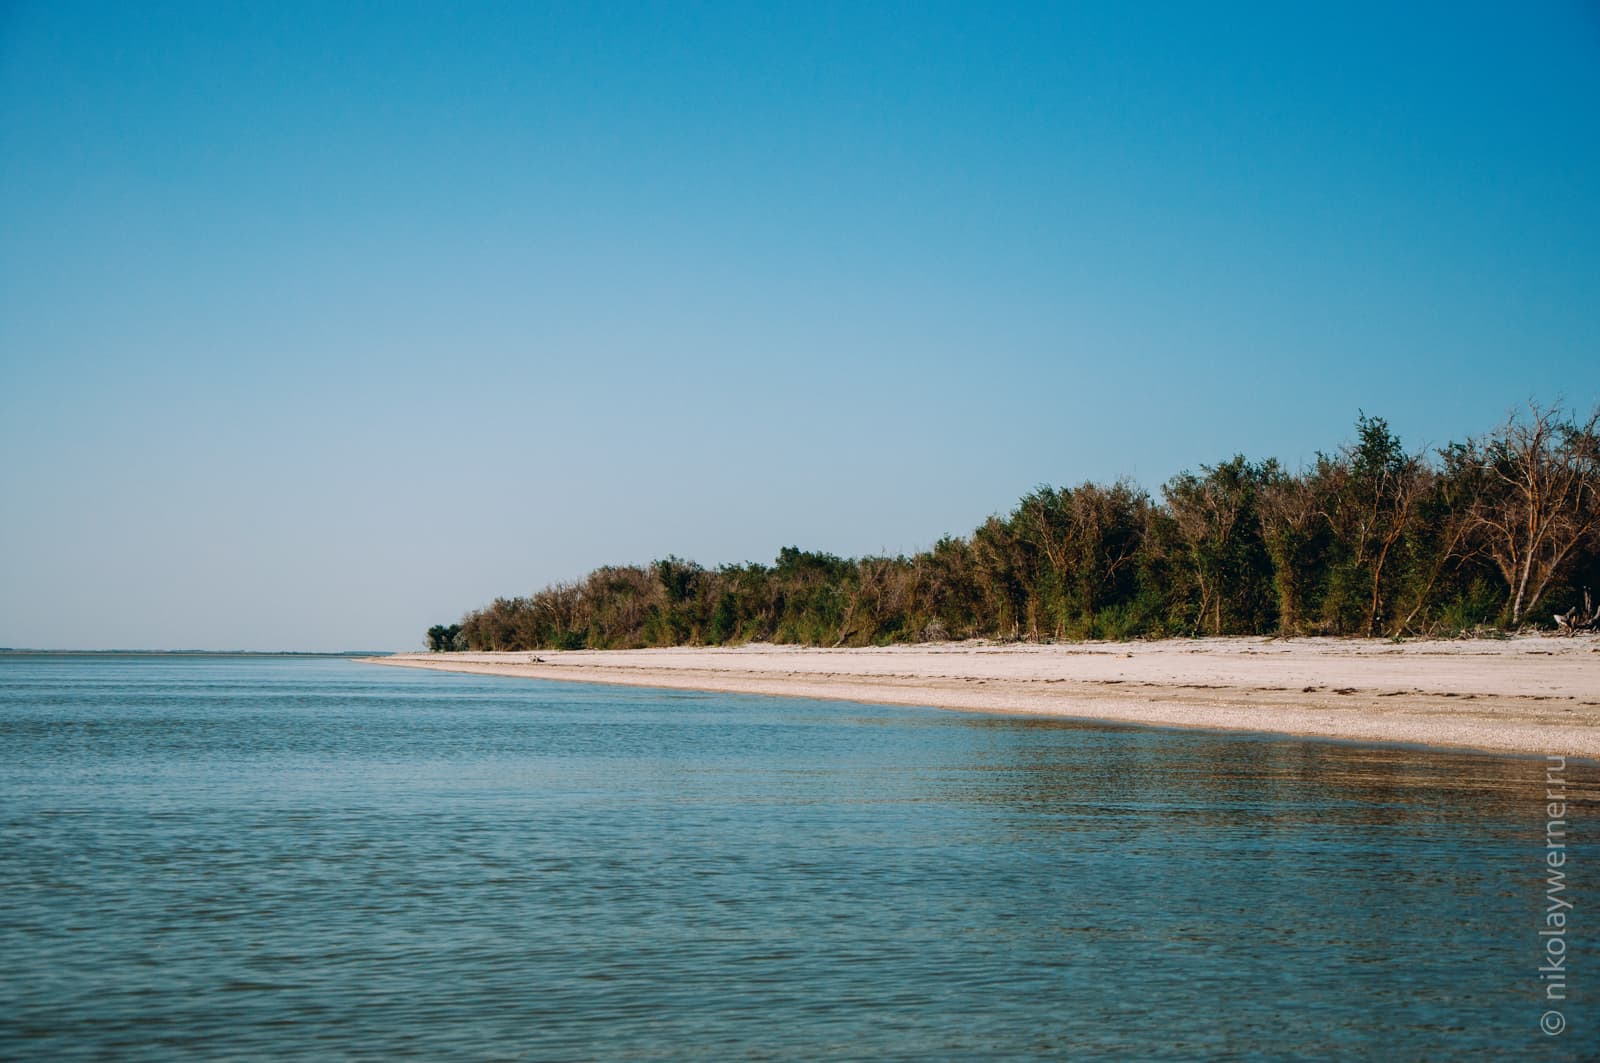 Вид на печаный пляж со стороны моря. Половину кадра на переднем плане занимает вода (почти штиль), дальше песчаный пляж и невысокие деревья, да кустарники плотной стеной стоят за ним